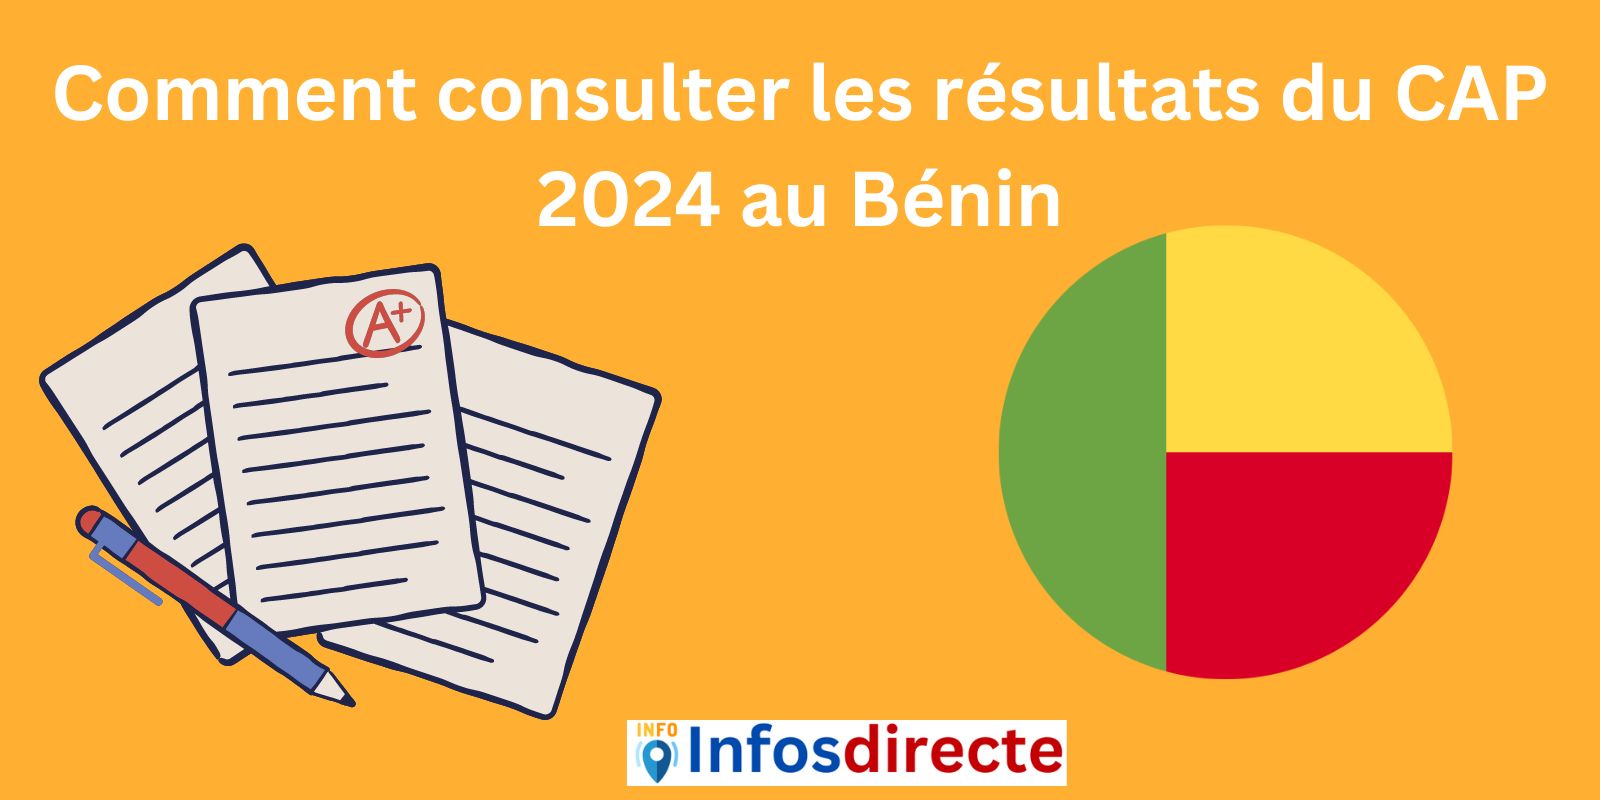 Comment consulter les résultats du CAP 2024 au Bénin